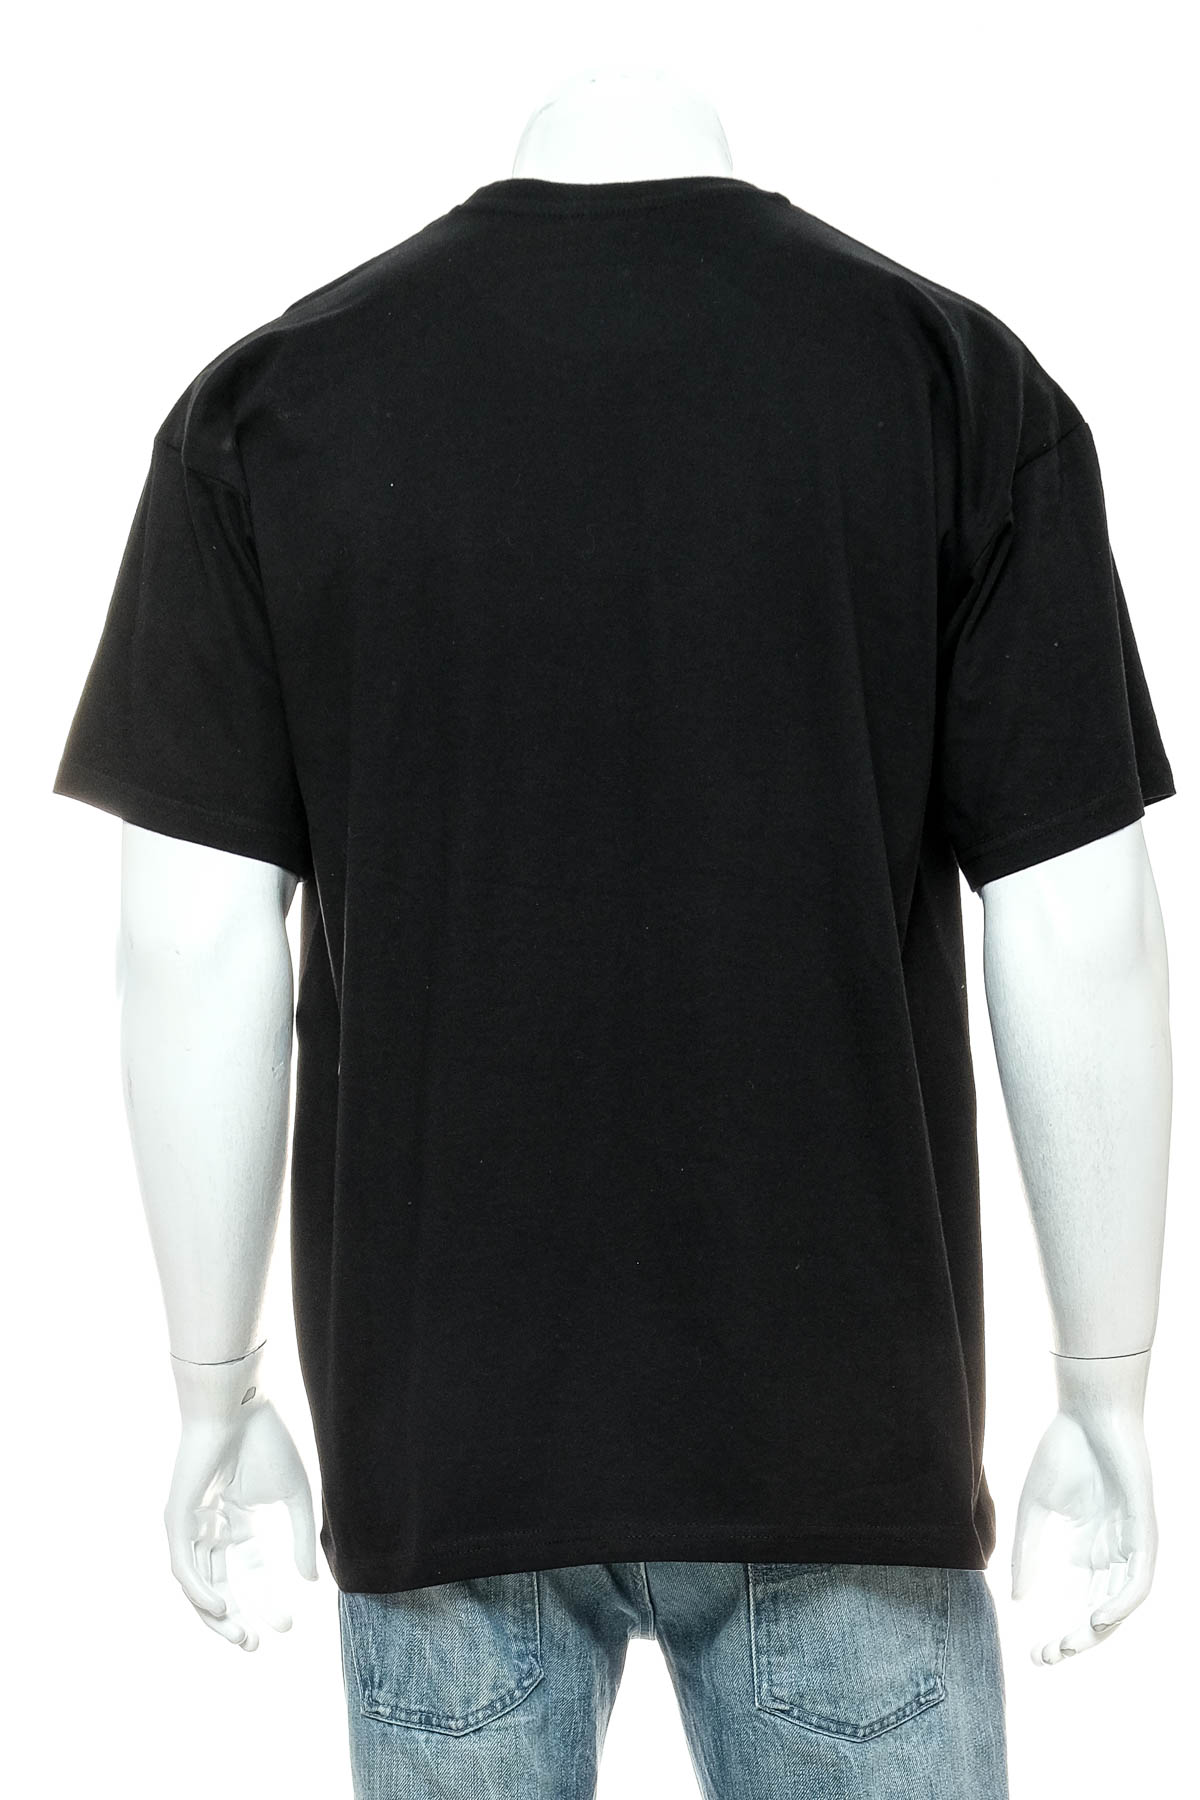 Men's T-shirt - B&C Collection - 1